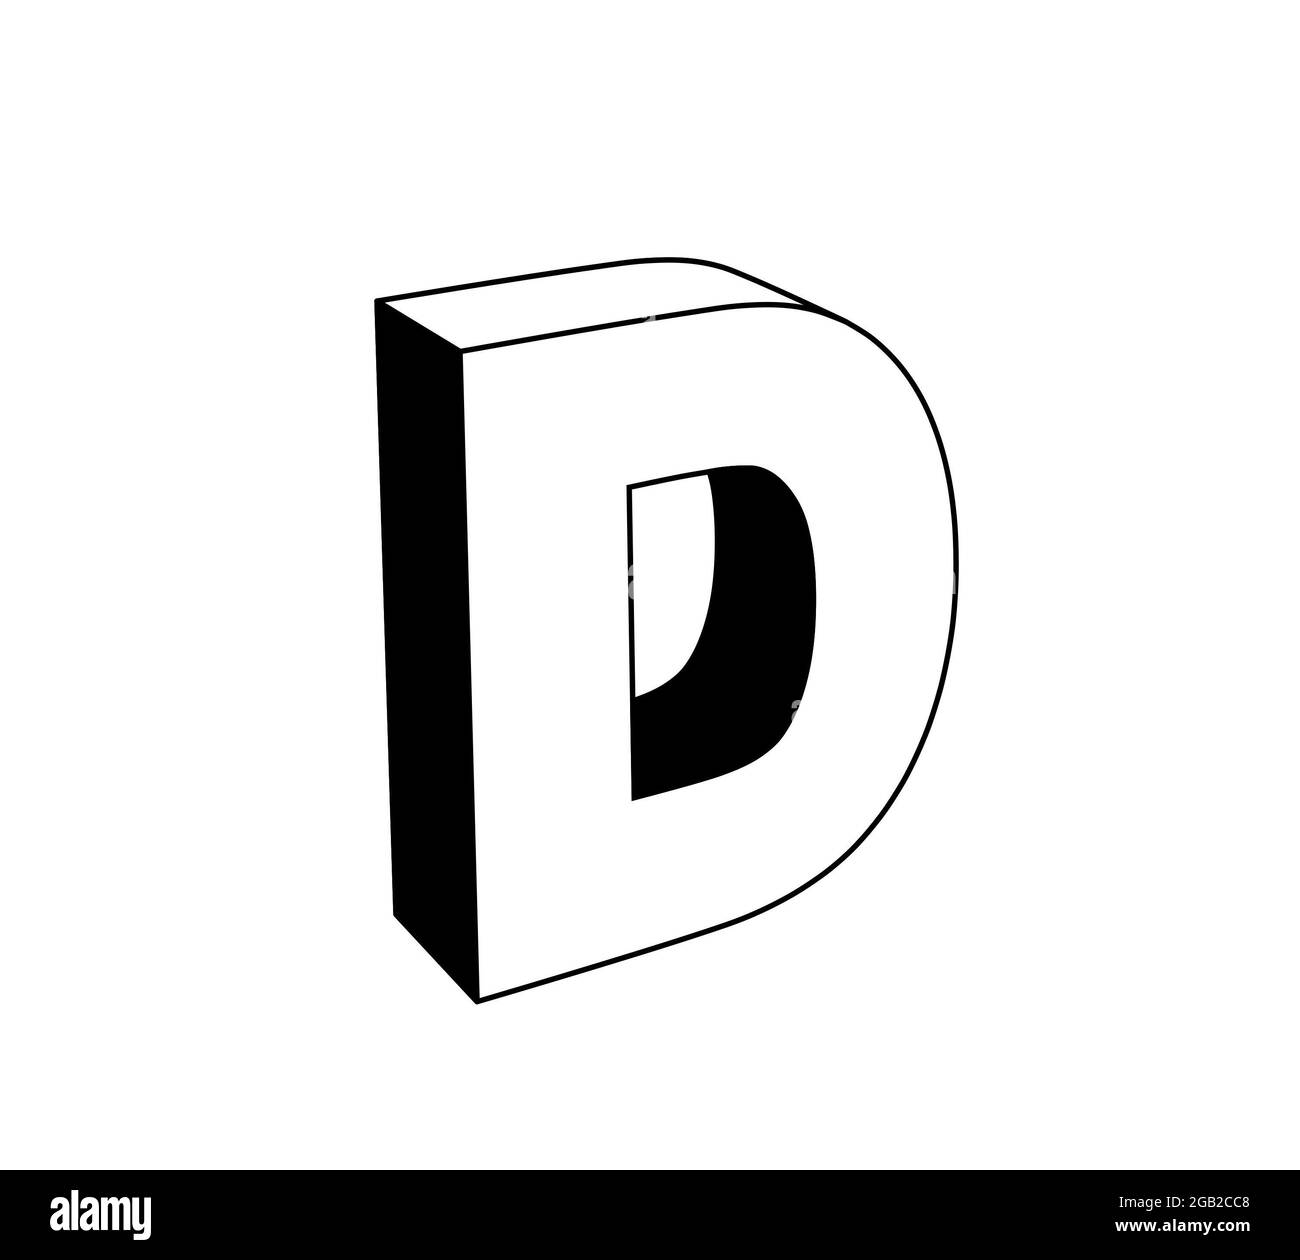 lettre d, illustration 3d noir et blanc isolée sur fond blanc. vue en perspective Banque D'Images